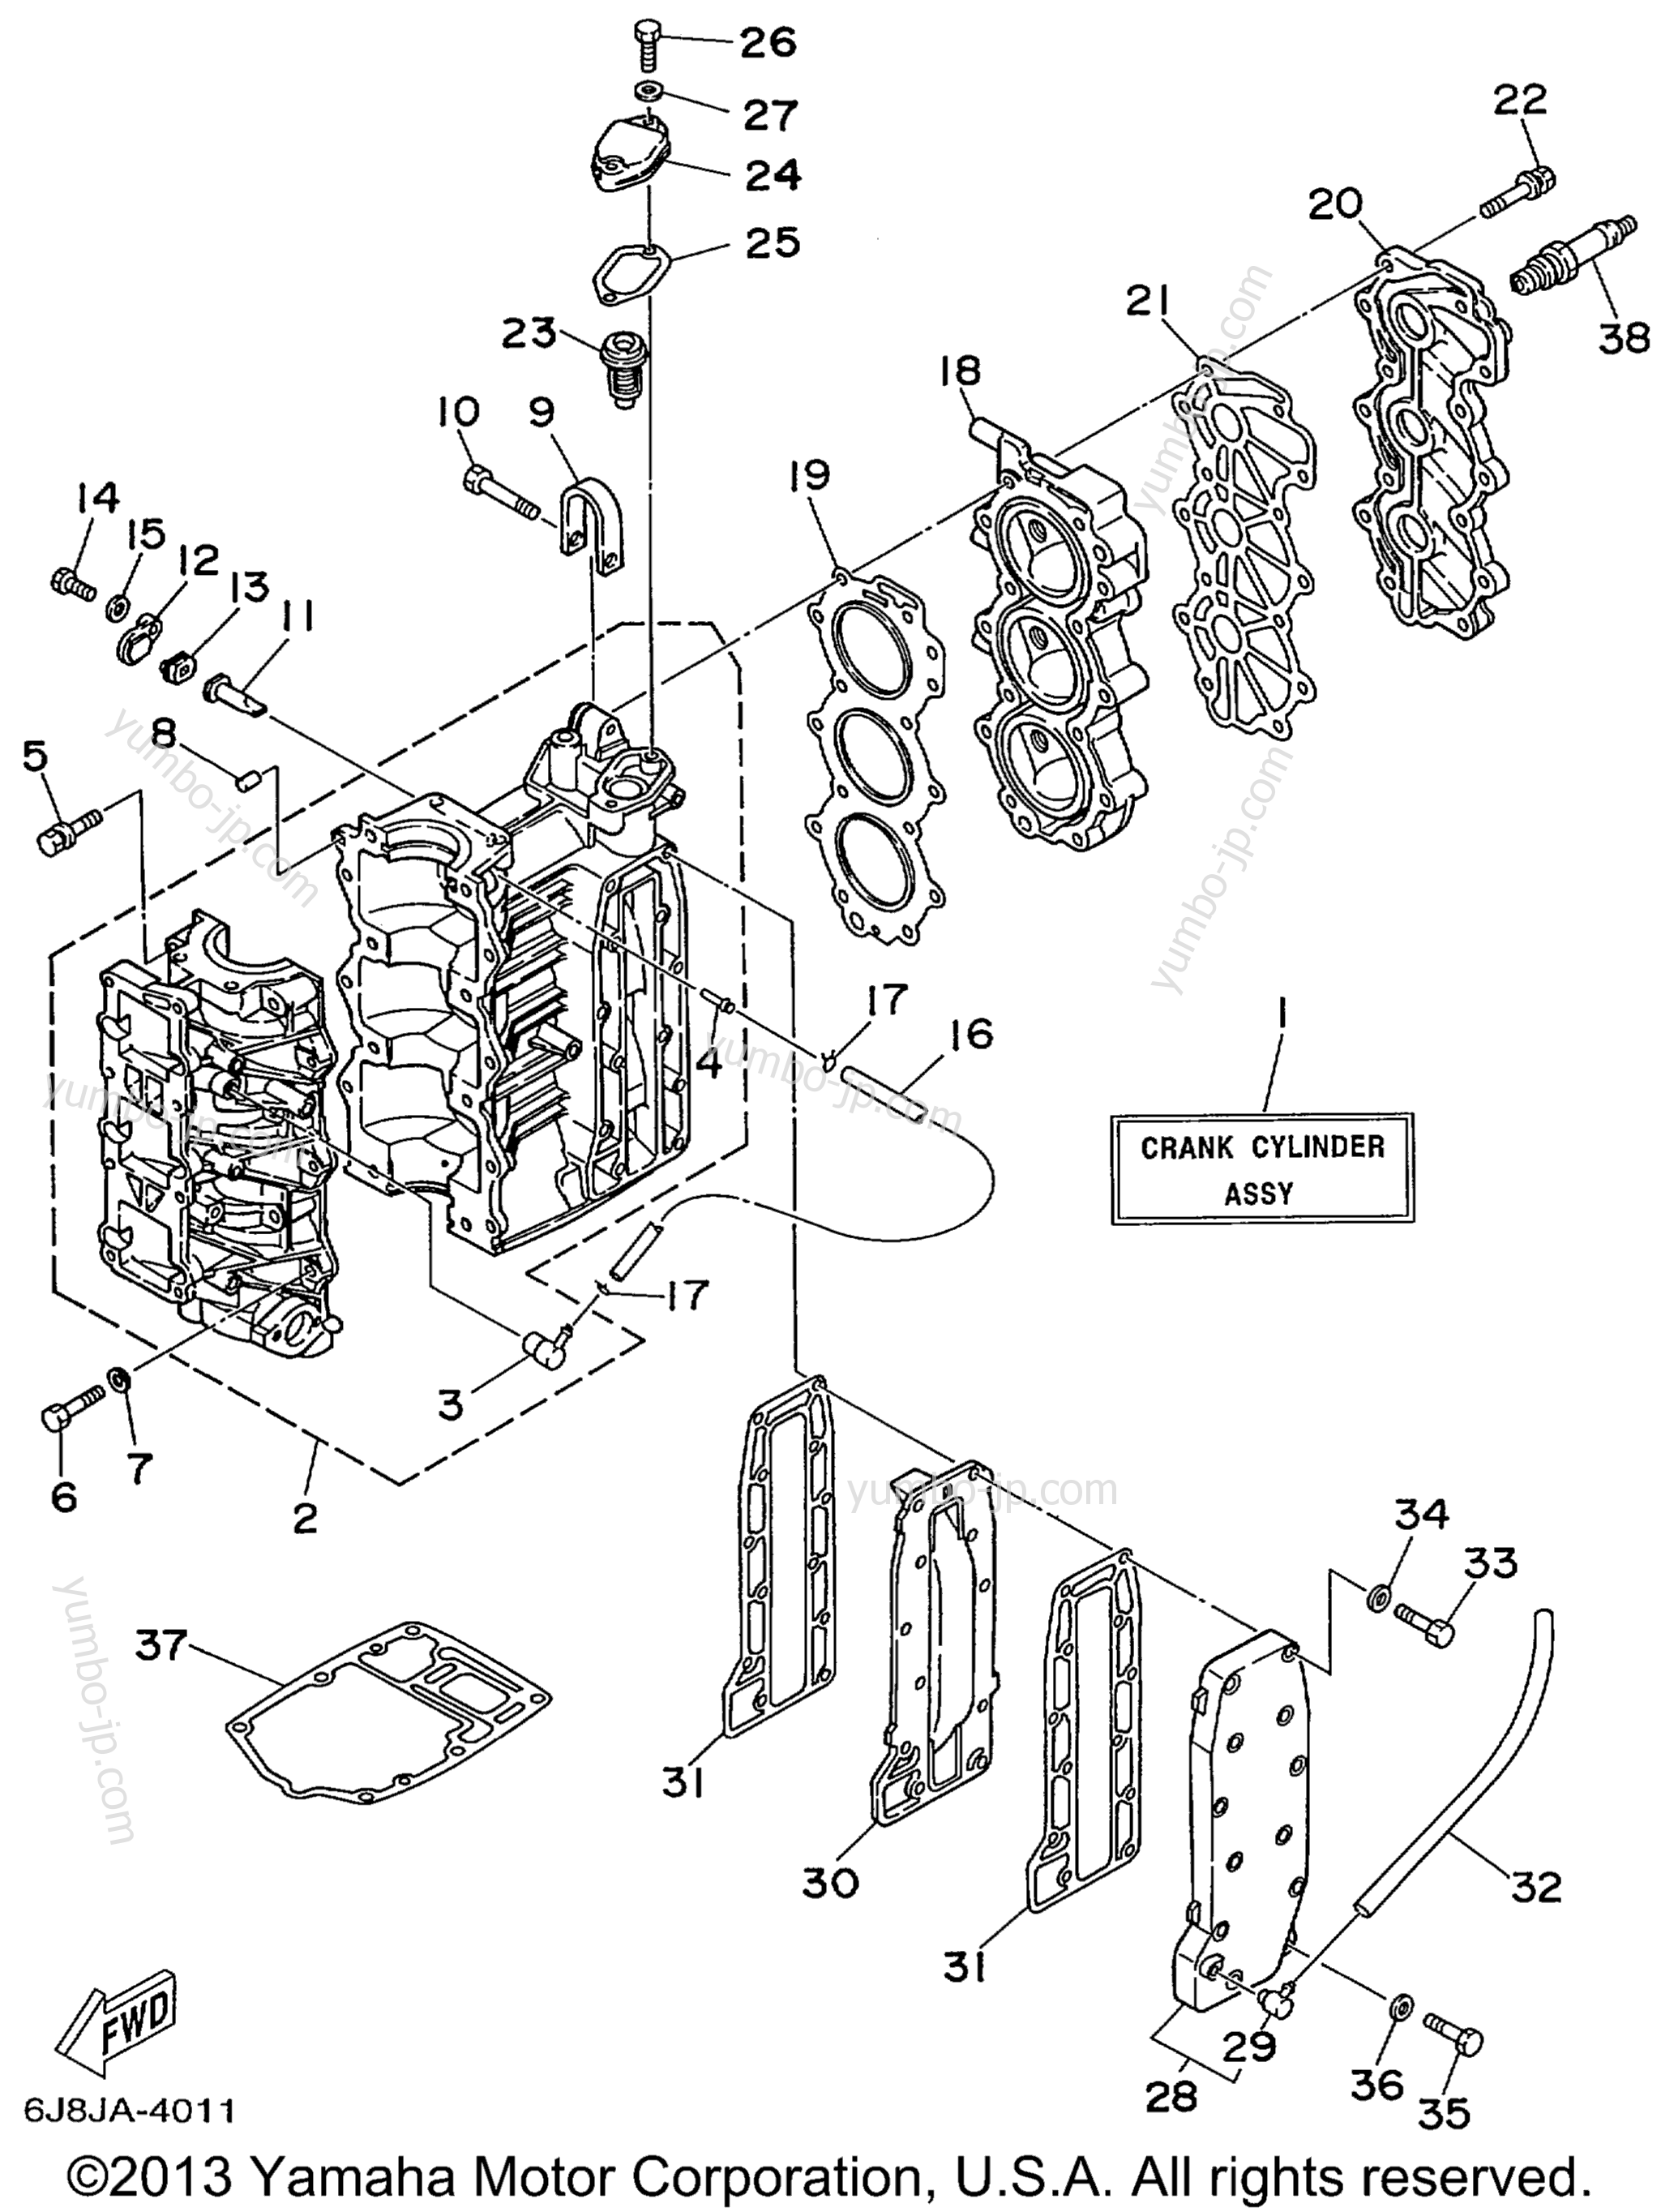 Cylinder Crankcase для лодочных моторов YAMAHA 30MSHX_MLHX_ELHX_ELRX (30MSHX) 1999 г.